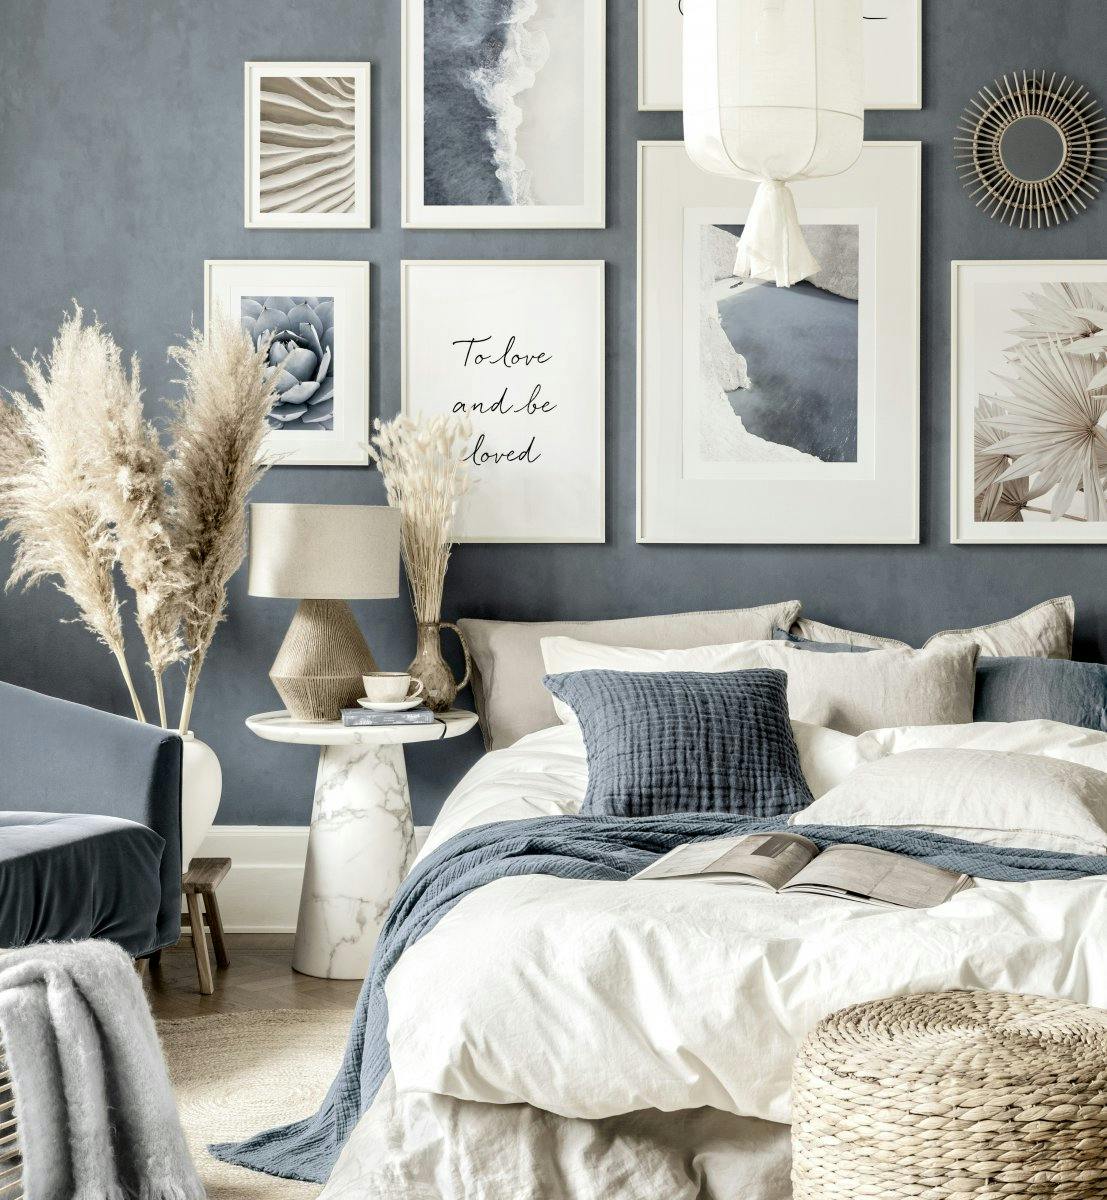 جدار الفن للوحات اللون الأزرق والبيج لغرفة نوم زرقاء مع إطارات خشبية بيضاء